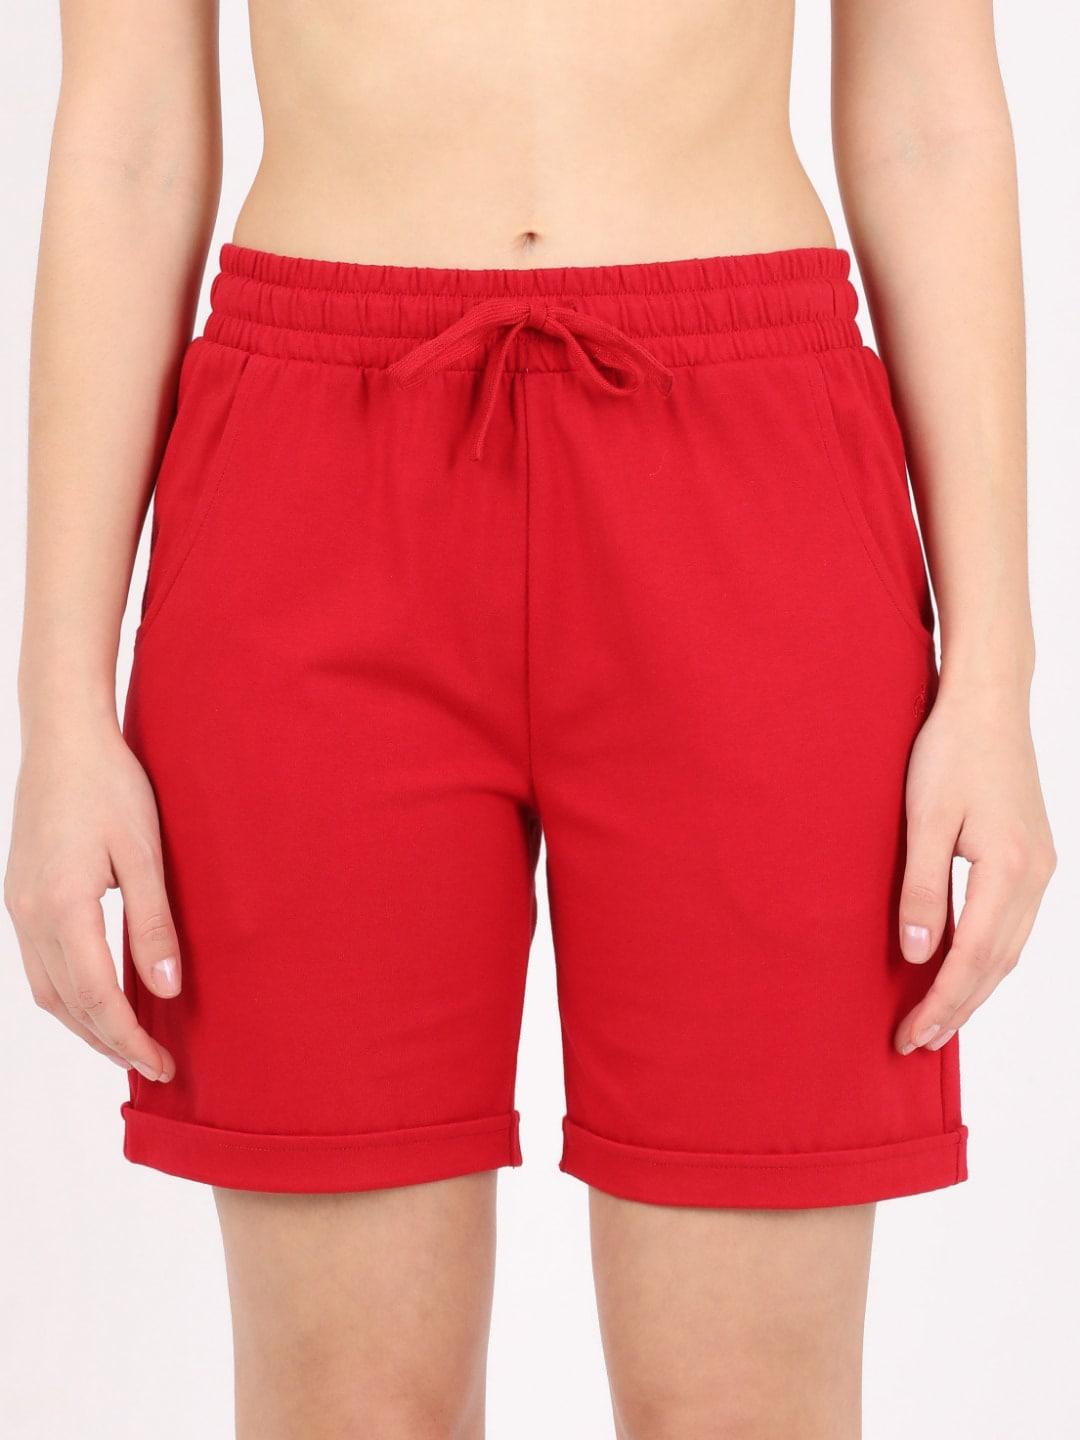 jockey-women-red-cotton-lounge-shorts